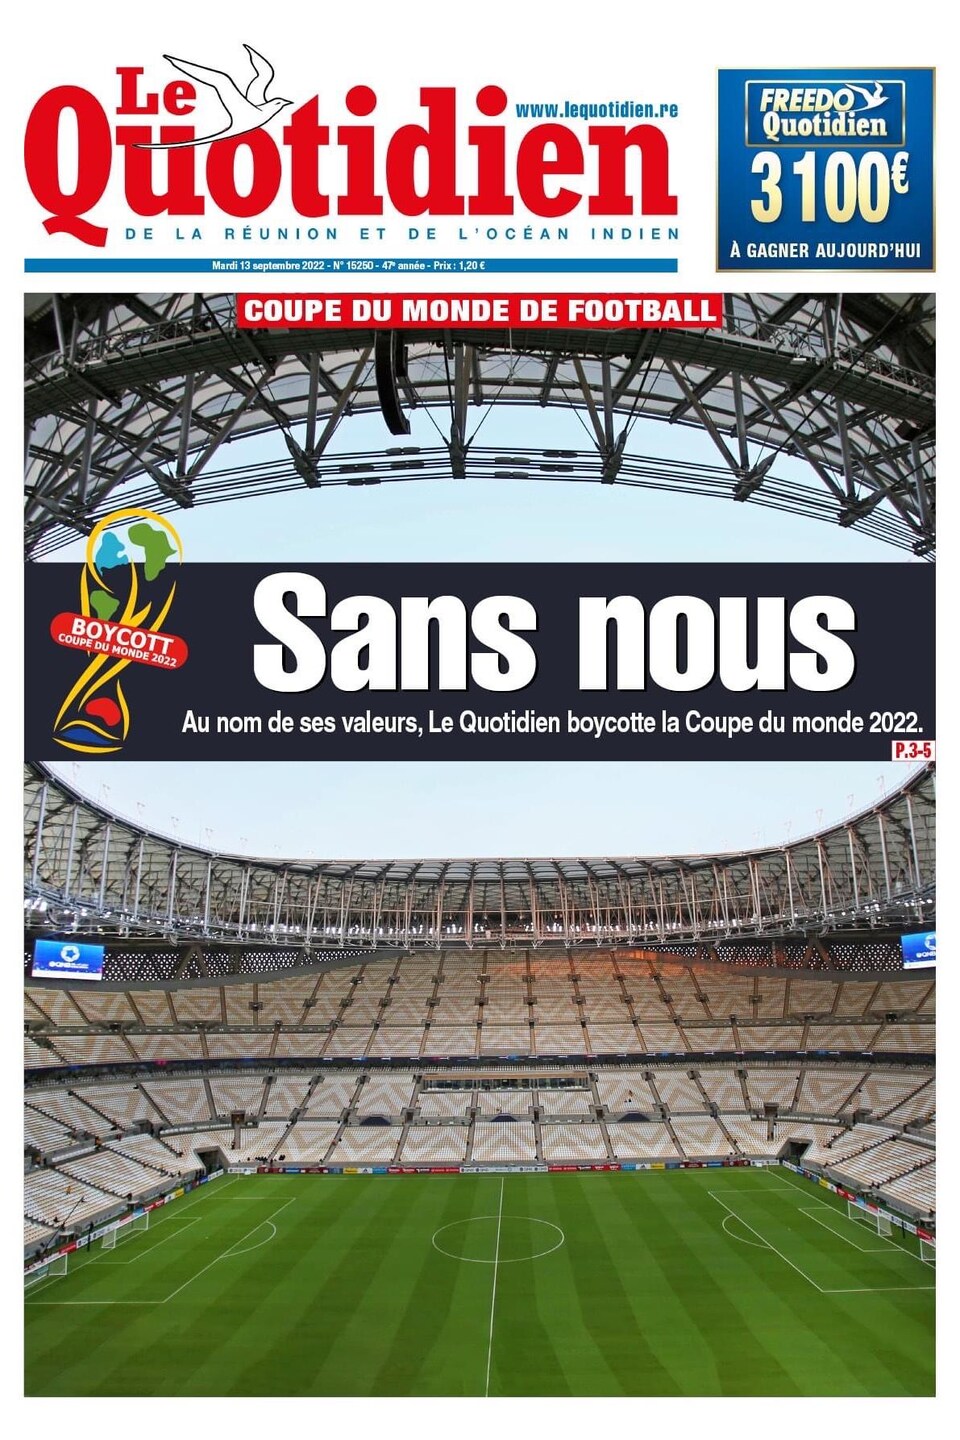 La une d'un journal où il est écrit : «Sans nous, au nom de ses valeurs, le Quotidien boycotte la Coupe du monde 2022.»